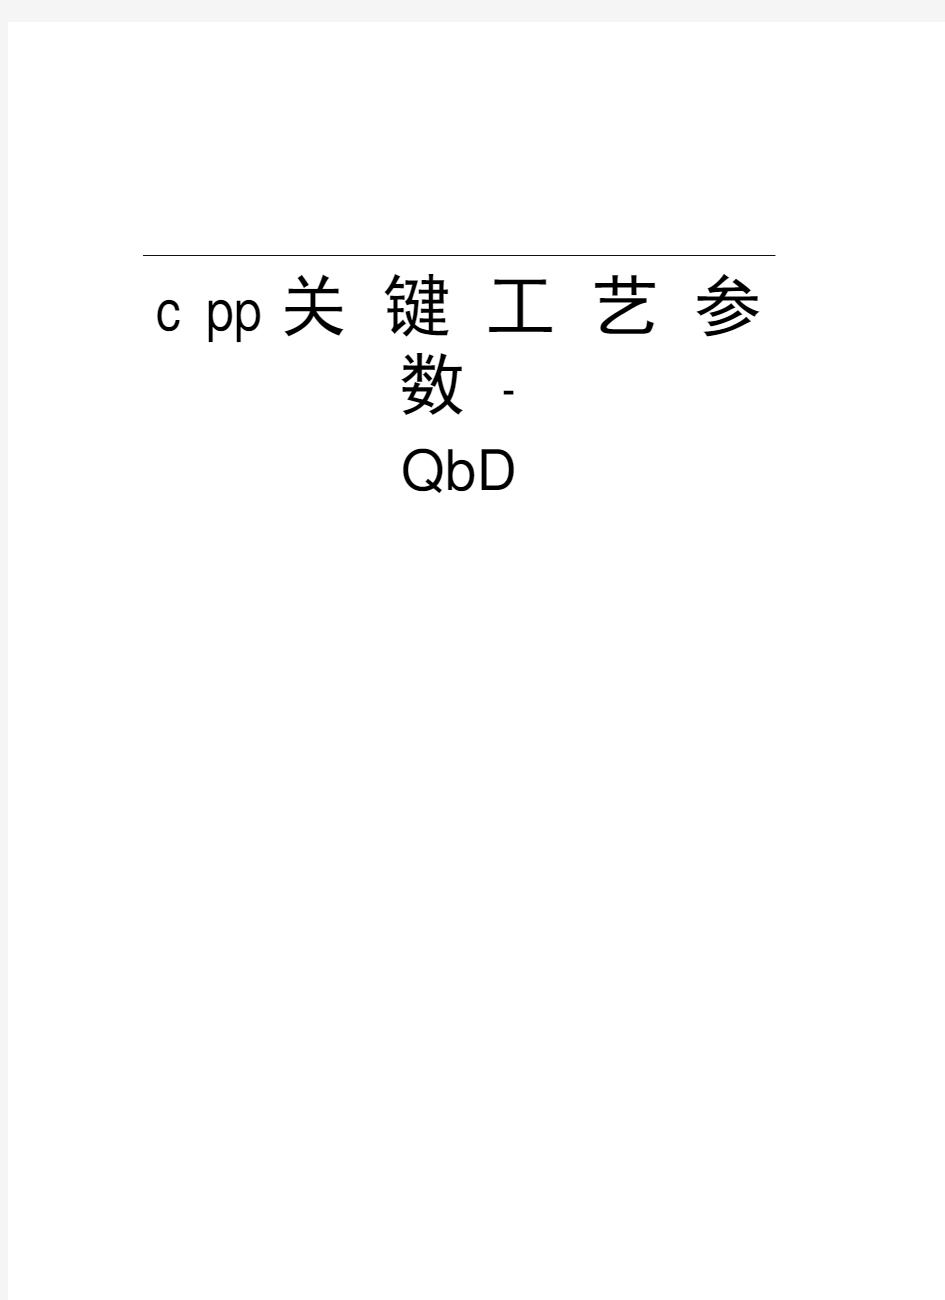 cpp关键工艺参数-QbD教程文件